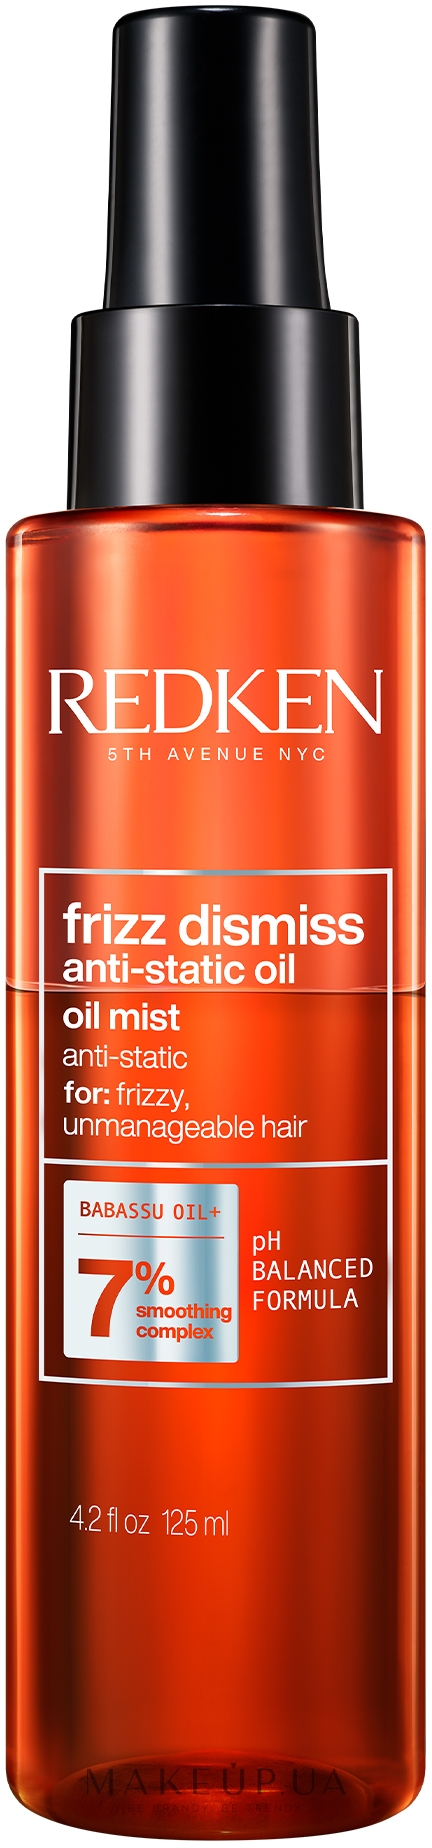 Олія-спрей з антистатичним ефектом - Redken Frizz Dismiss Anti-Static Oil Mist — фото 125ml